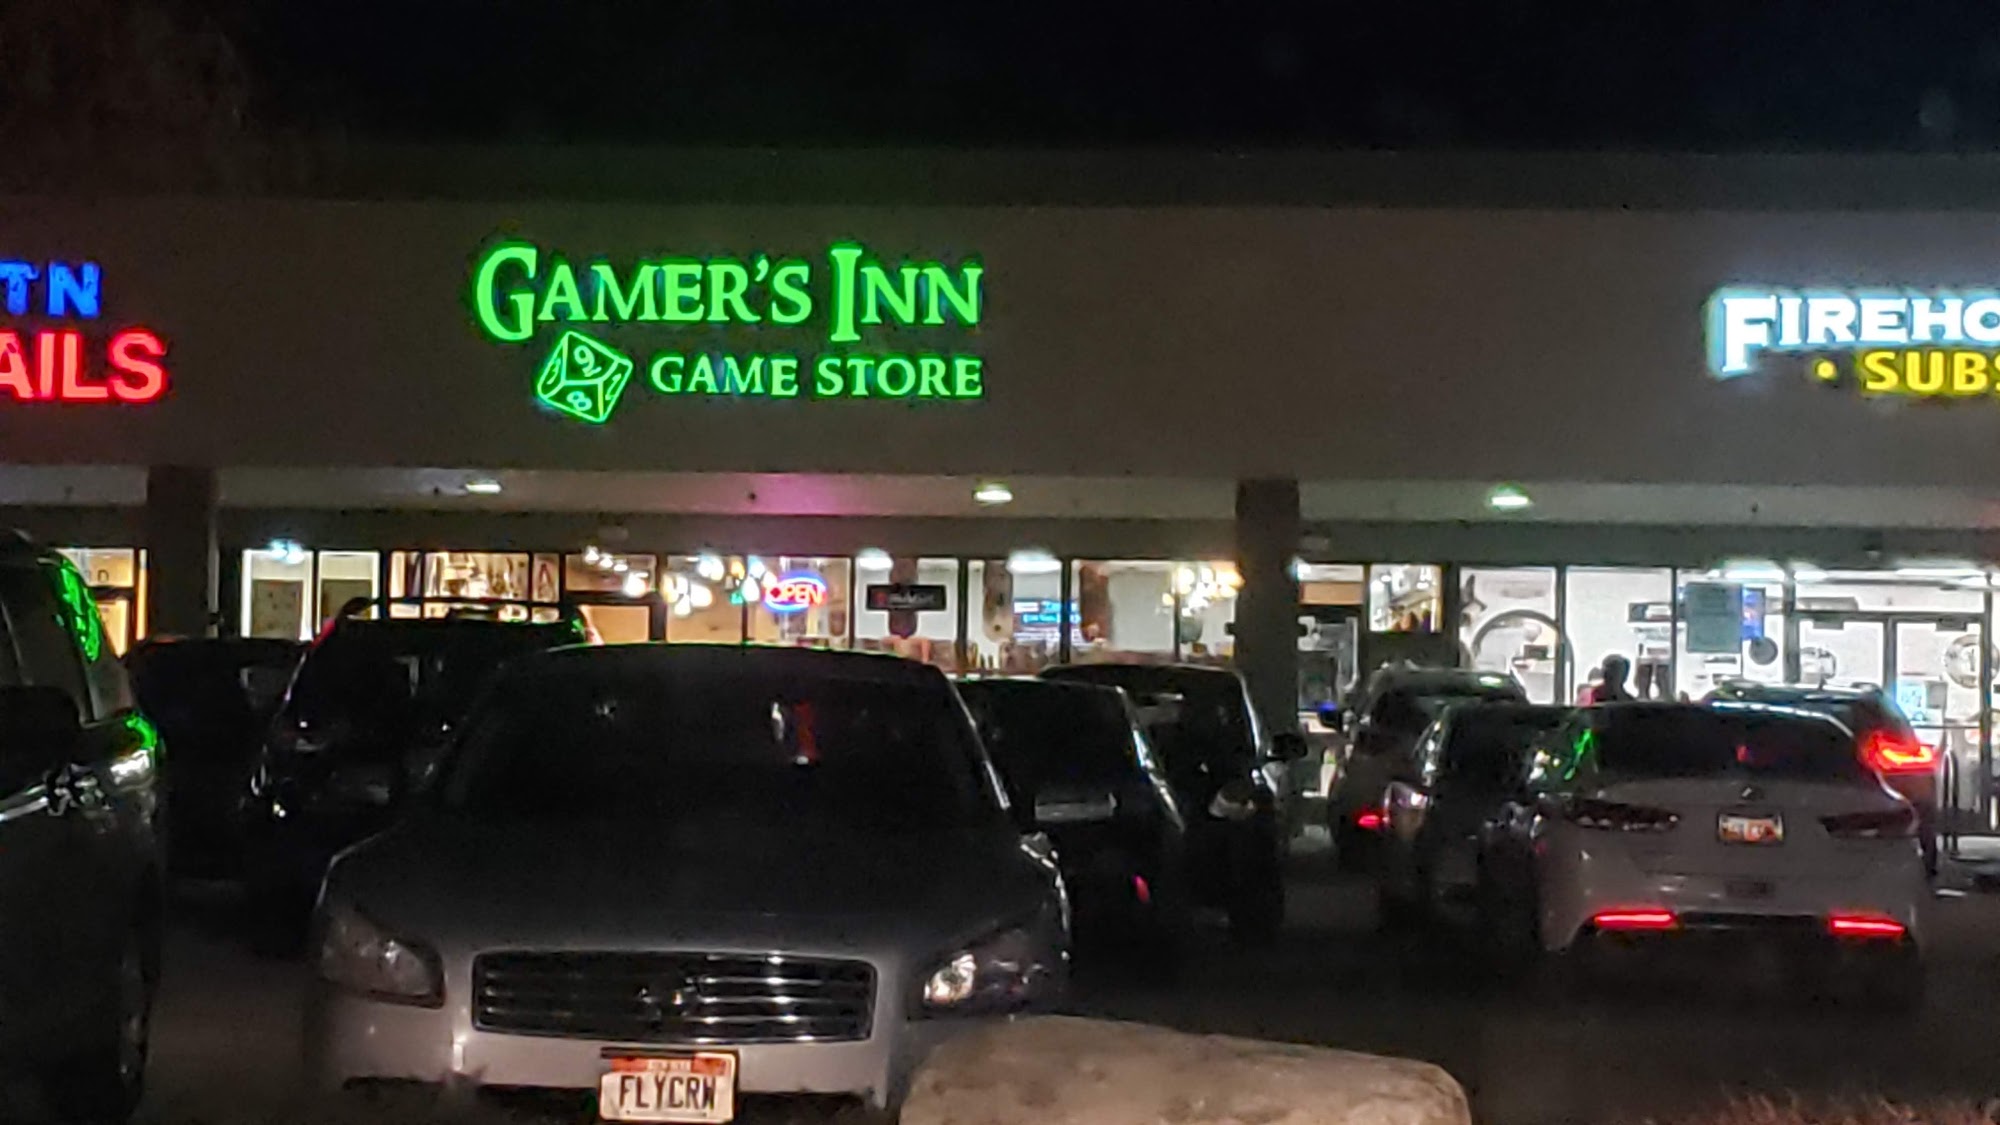 Gamer's Inn